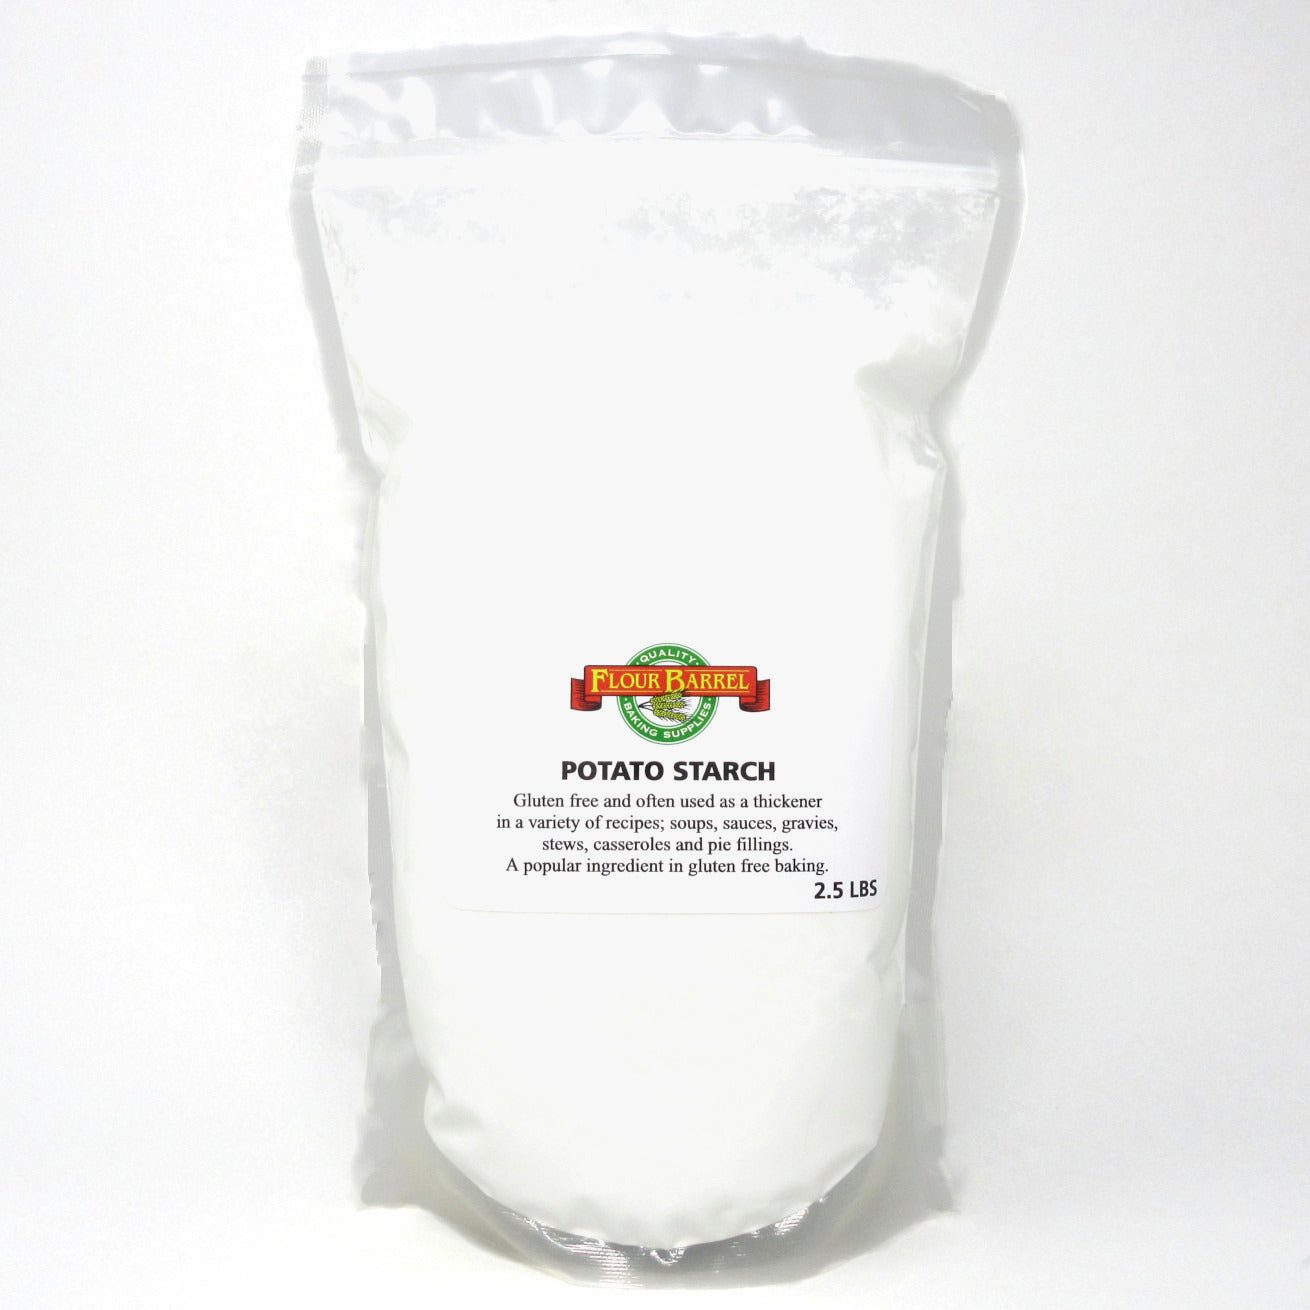 Flour Barrel product image - Potato Starch